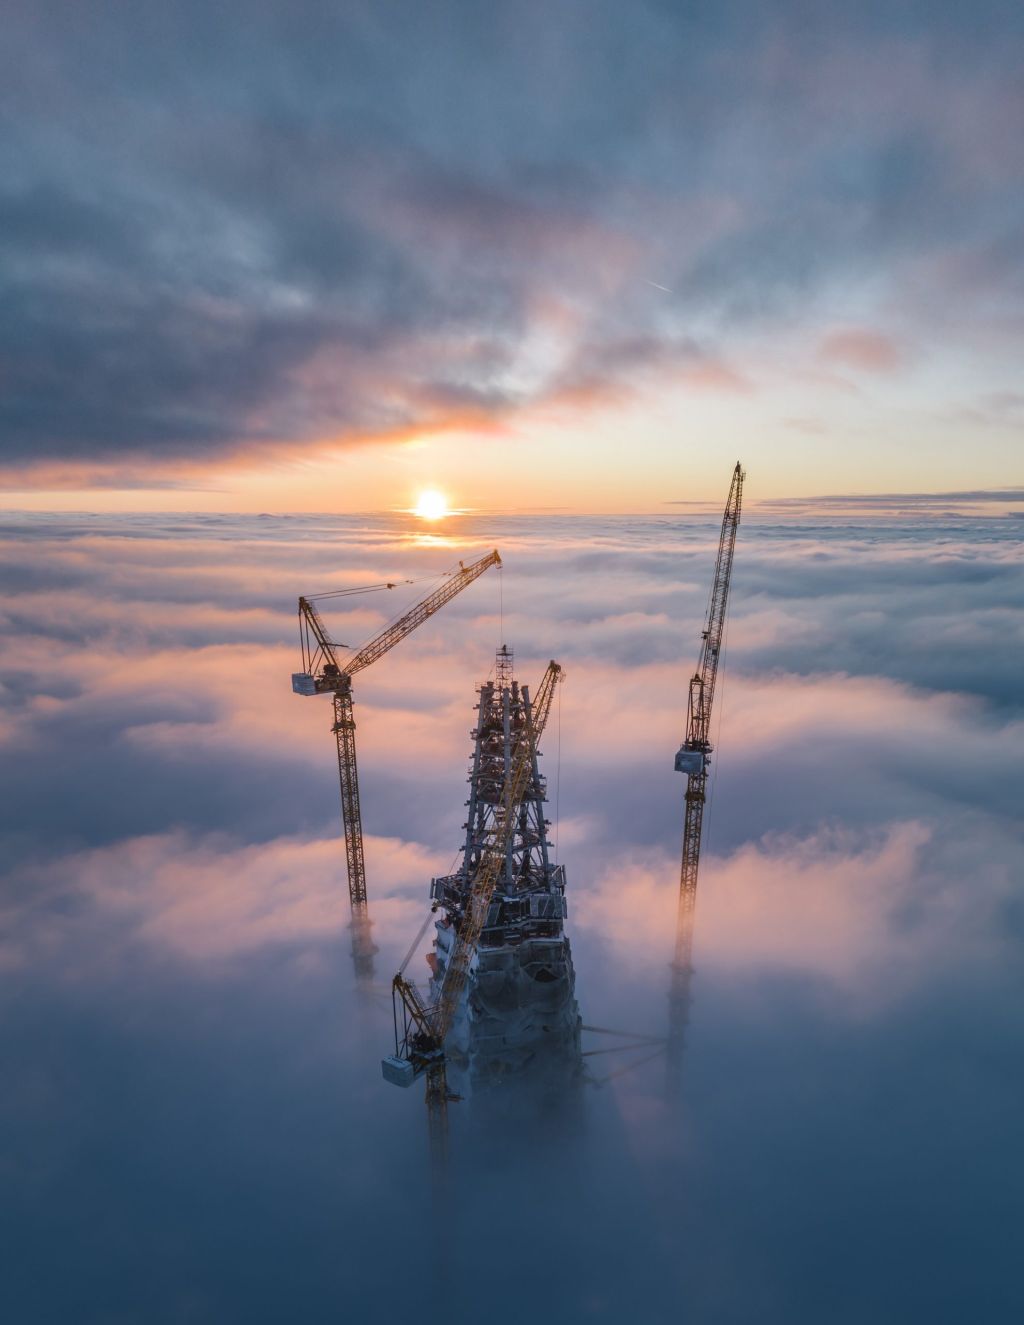 sunset above skyscraper by mikhail proskalov